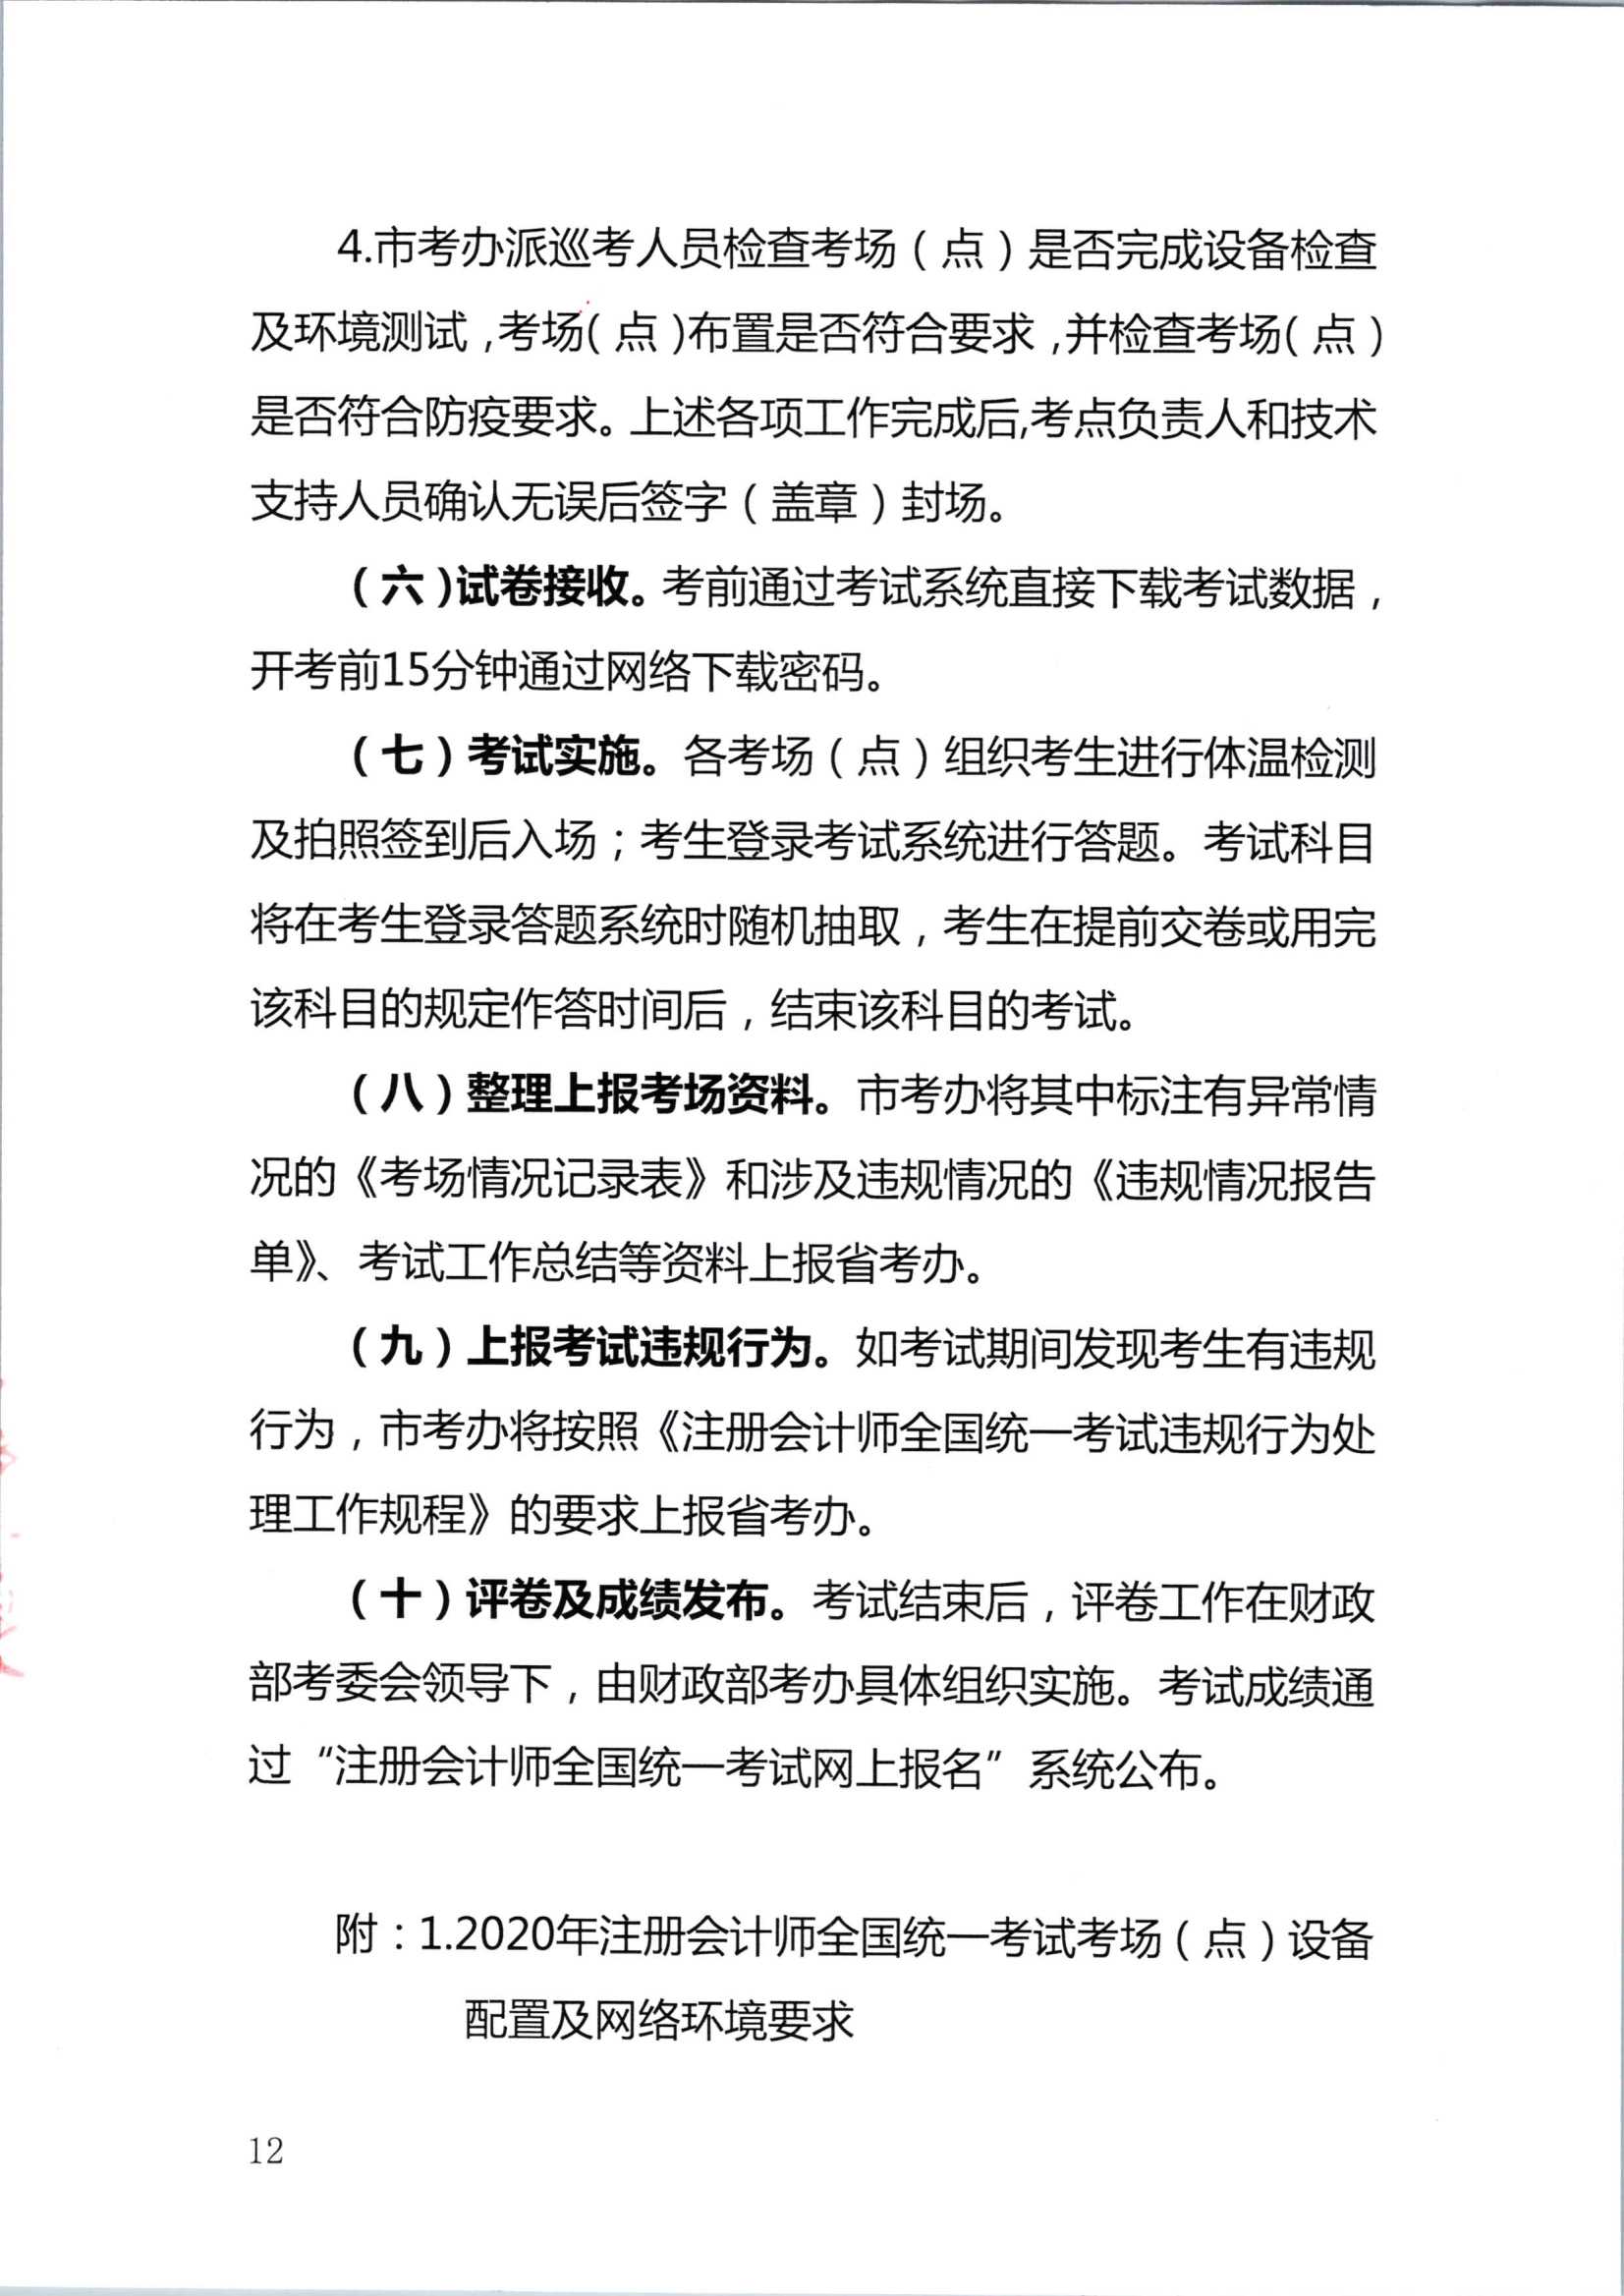 2020年注册会计师全国统一考试深圳考区工作方案_12.Png